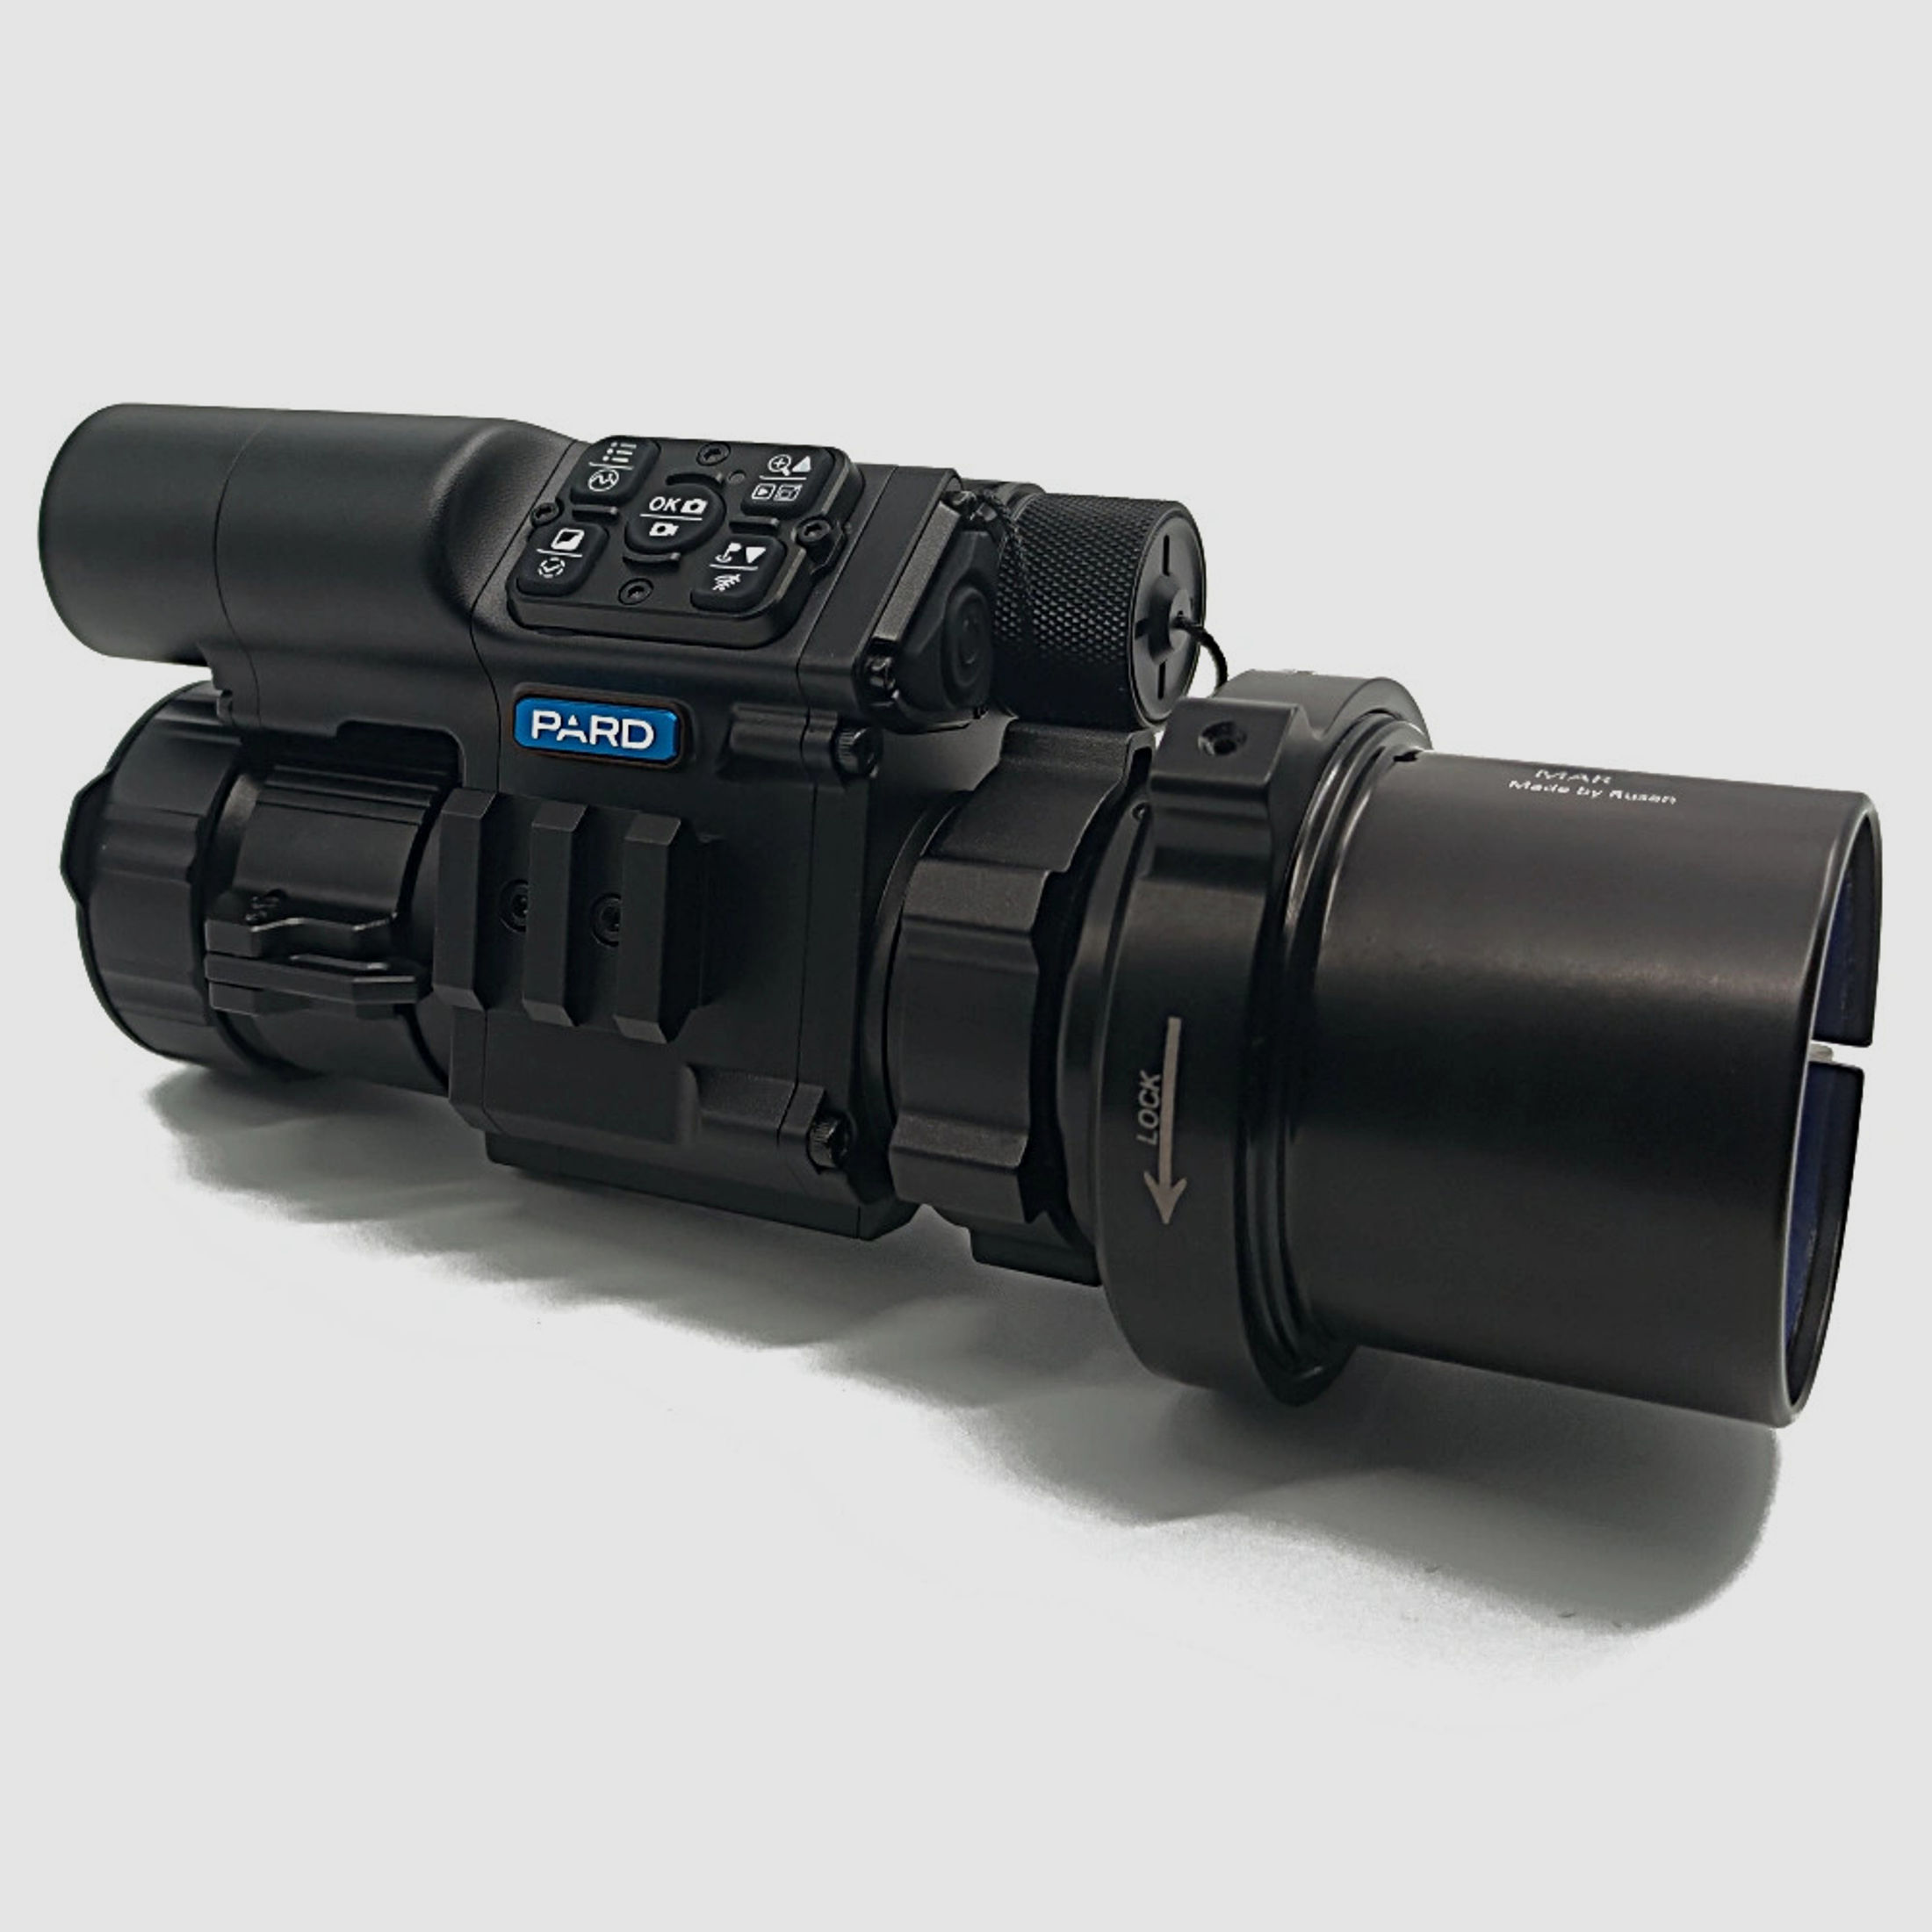 PARD FD1 Nachtsicht 3 in 1 Vorsatz, Monokular & Zielfernrohr - 850 nm mit LRF 48 mm RUSAN MAR + RUSAN MCR